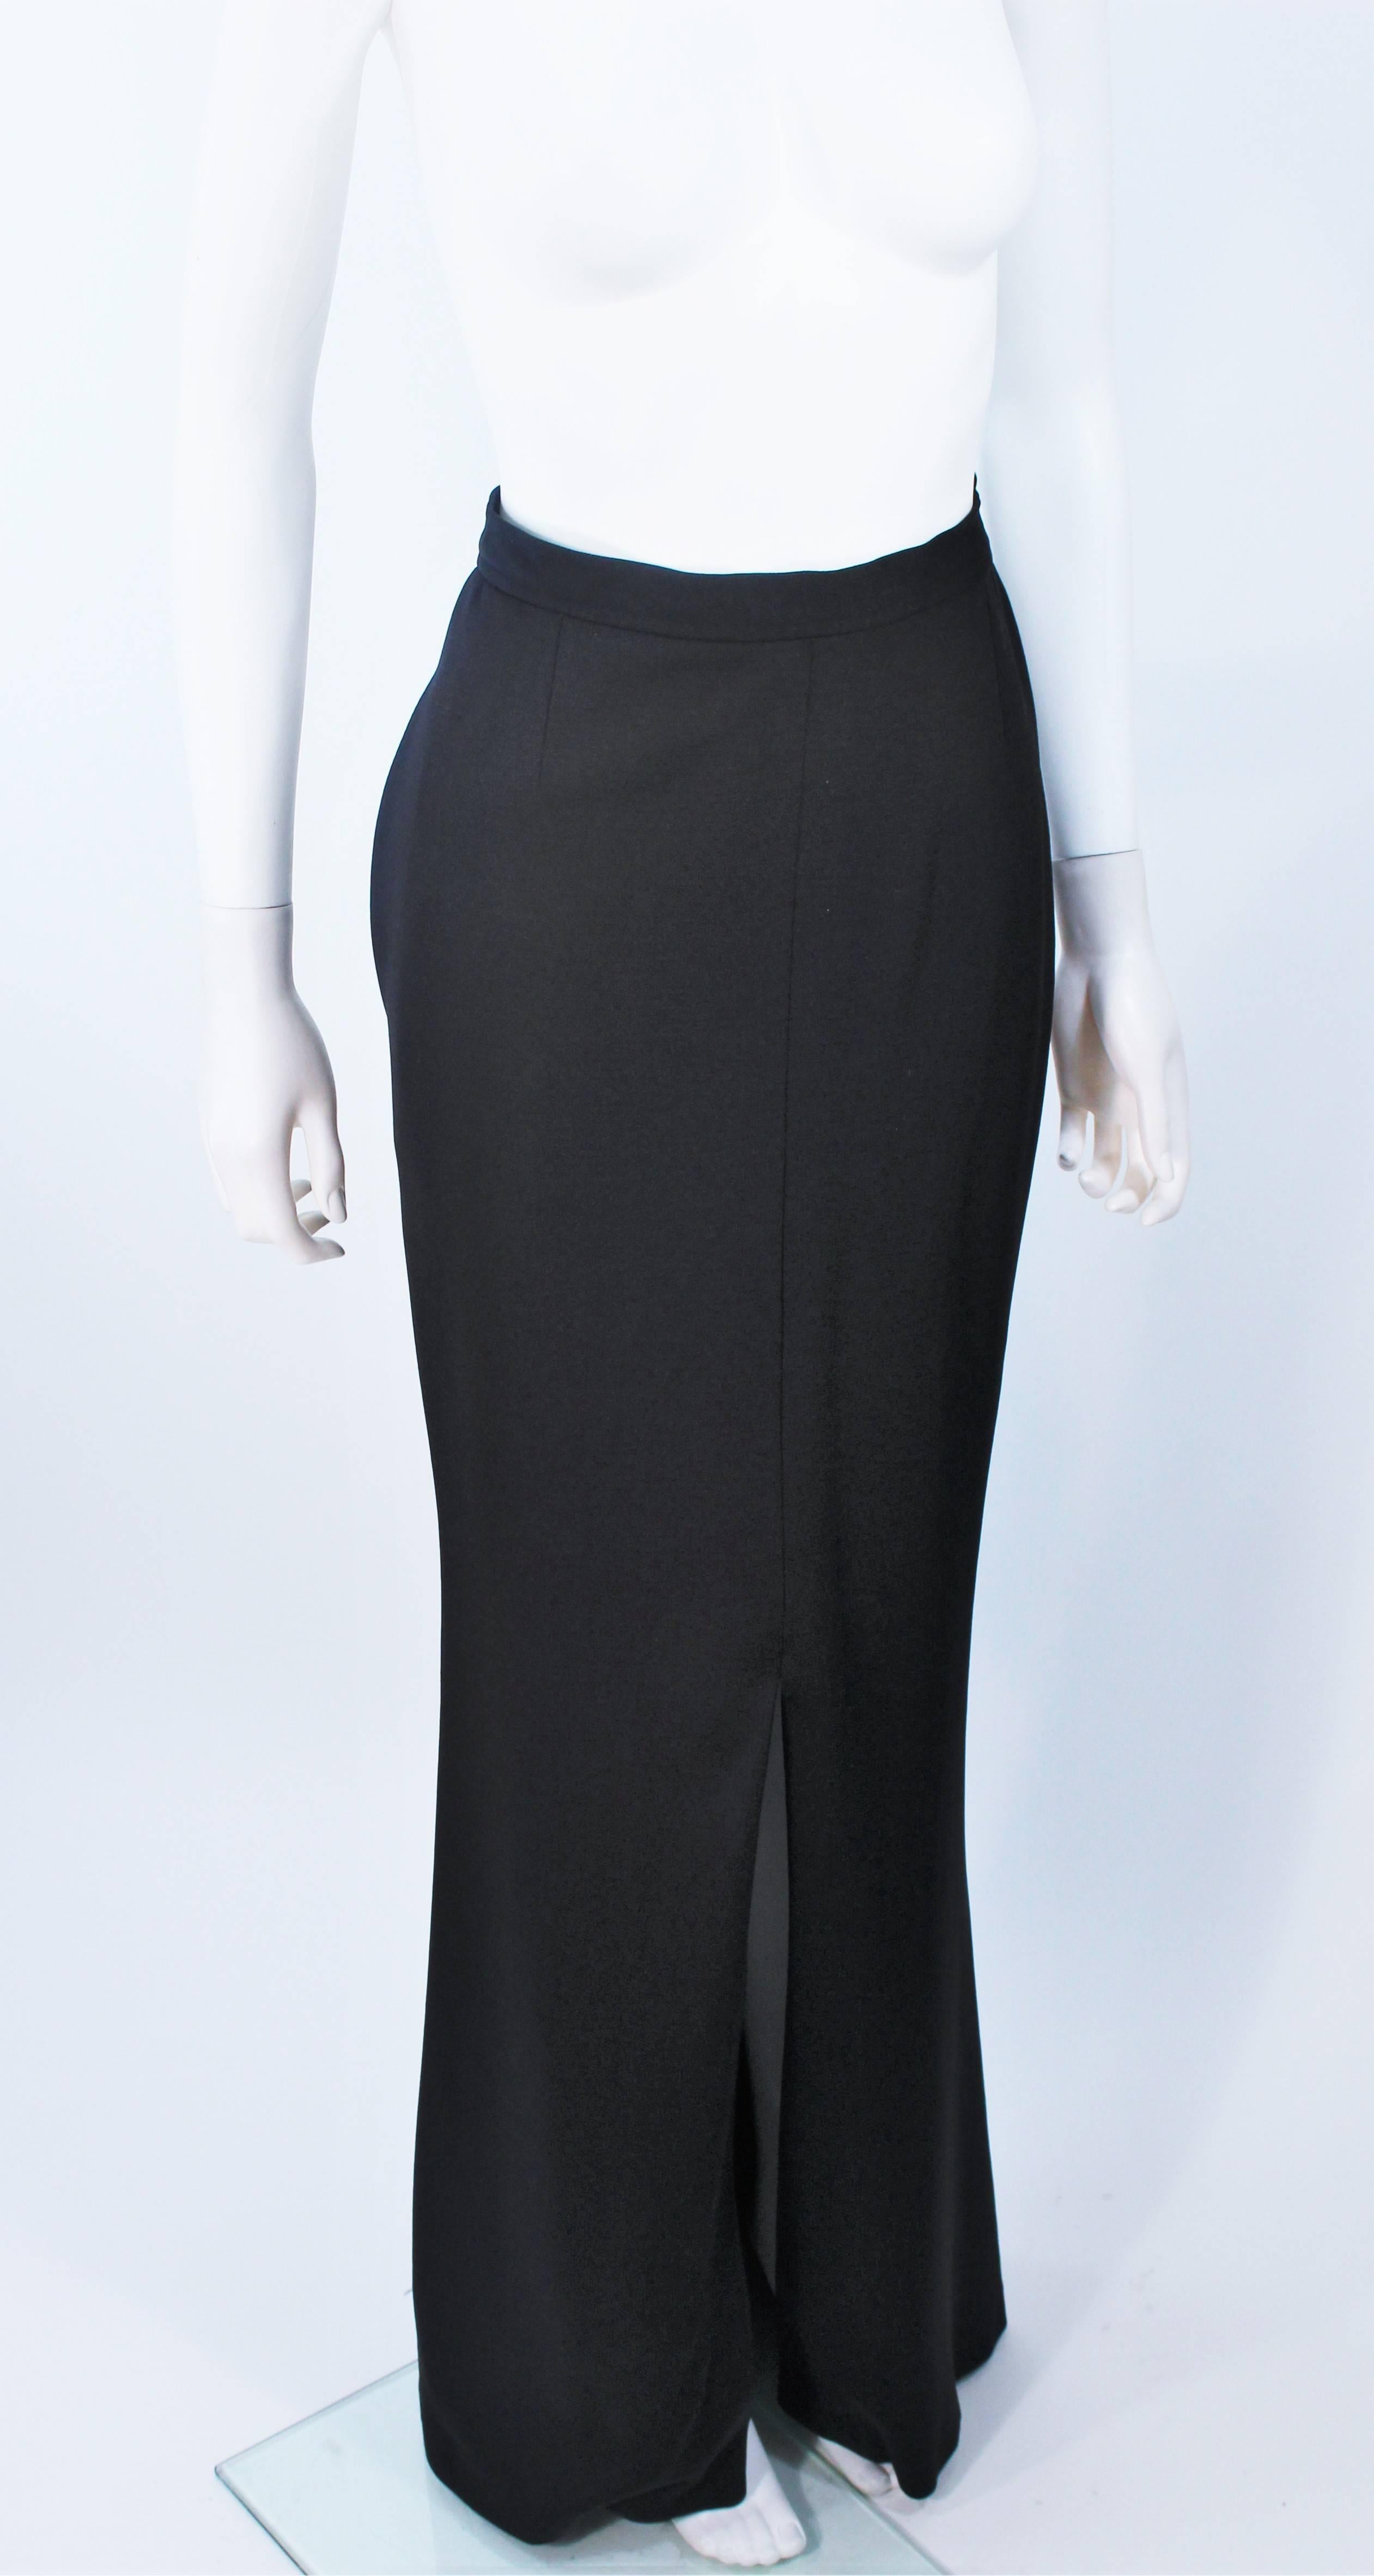 YVES SAINT LAURENT Black Full Length Mermaid Flare Skirt with Slit Size 2-4 1